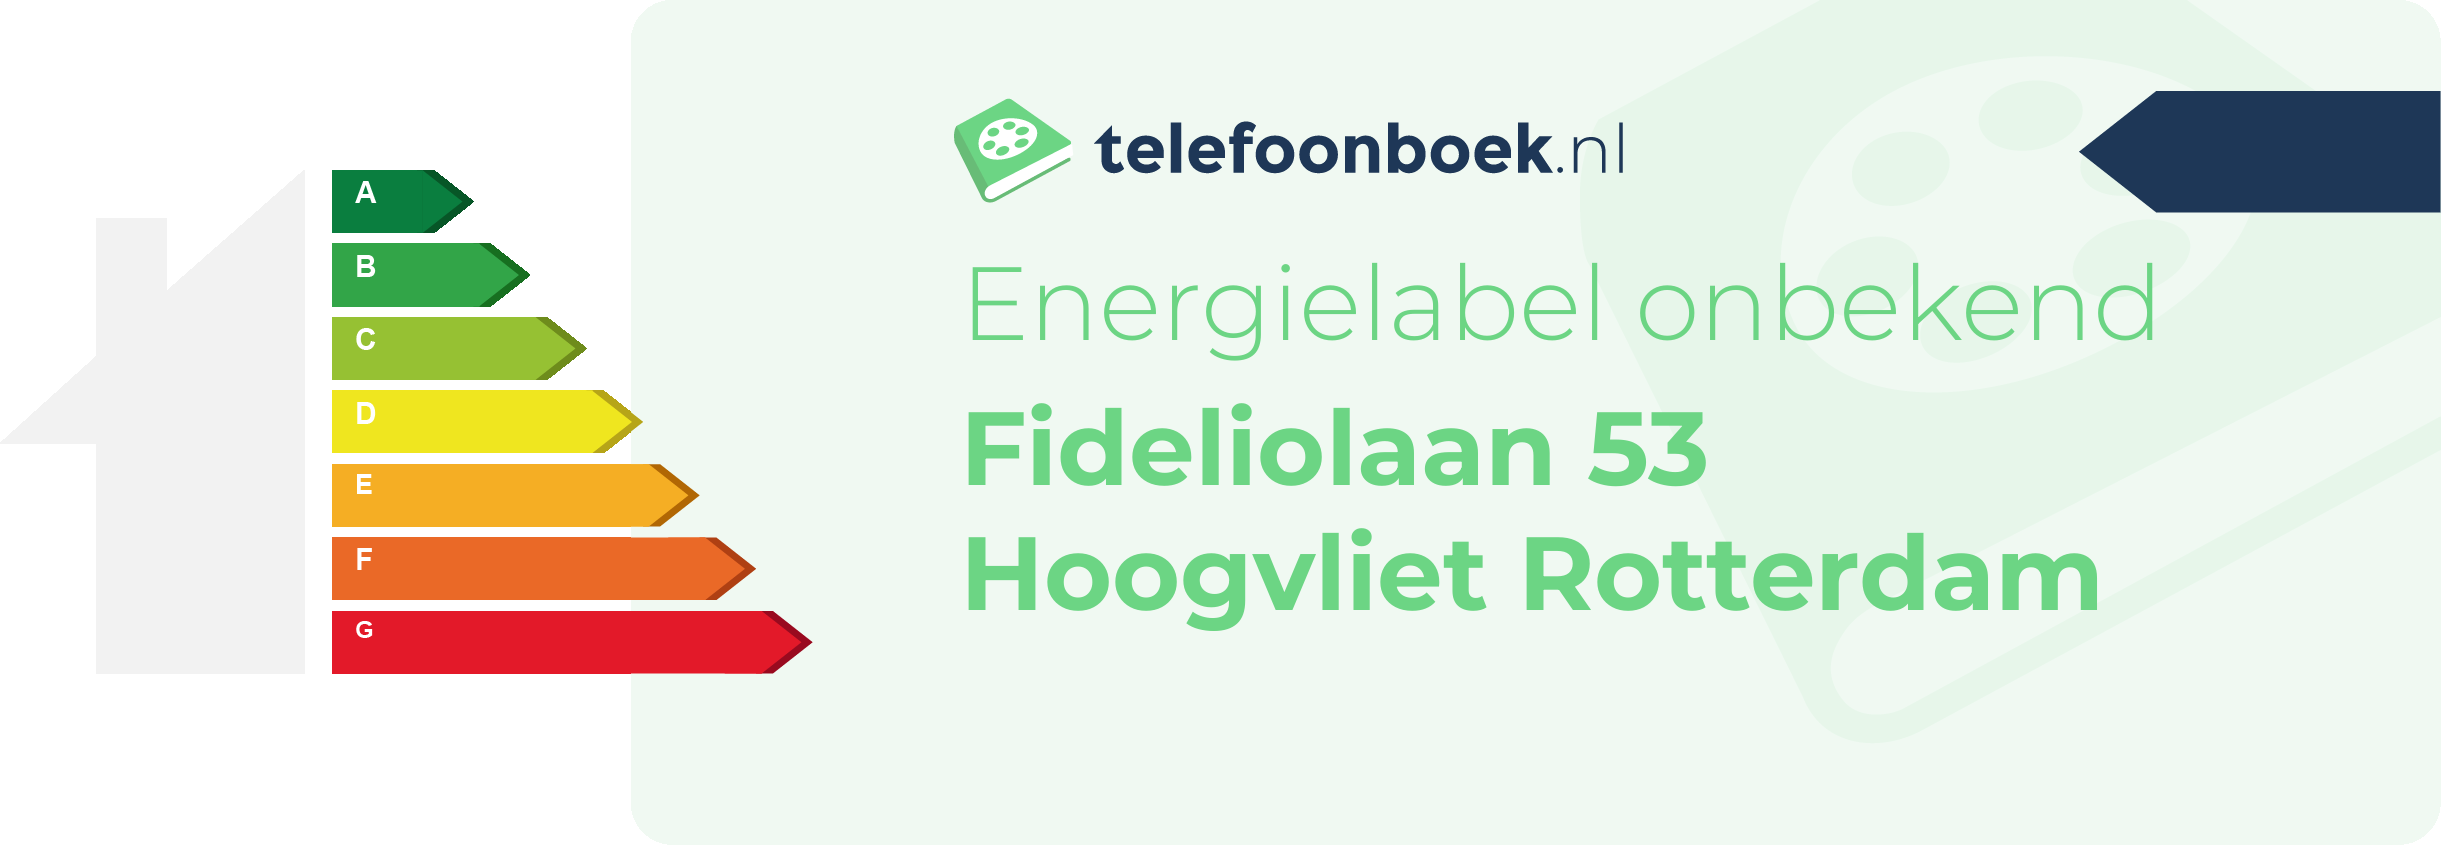 Energielabel Fideliolaan 53 Hoogvliet Rotterdam